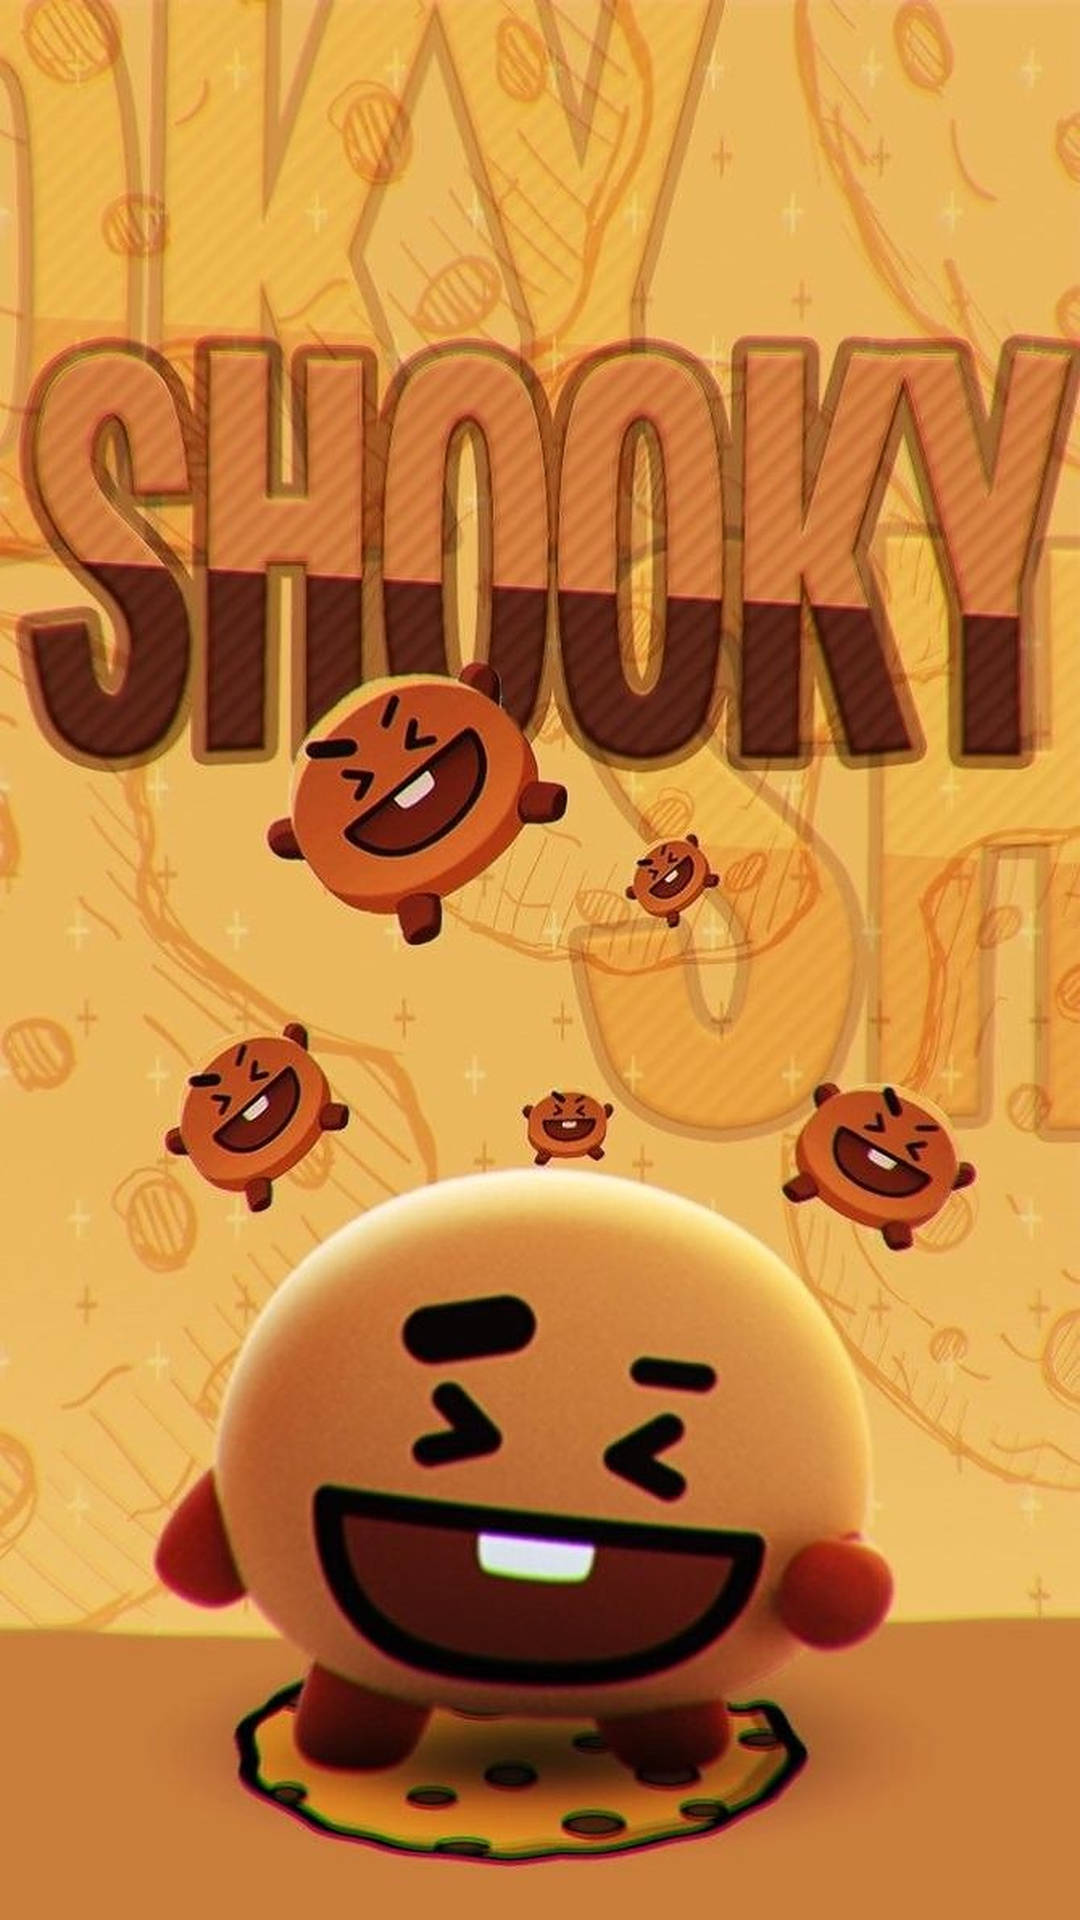 Shooky Bt21 Poster Background